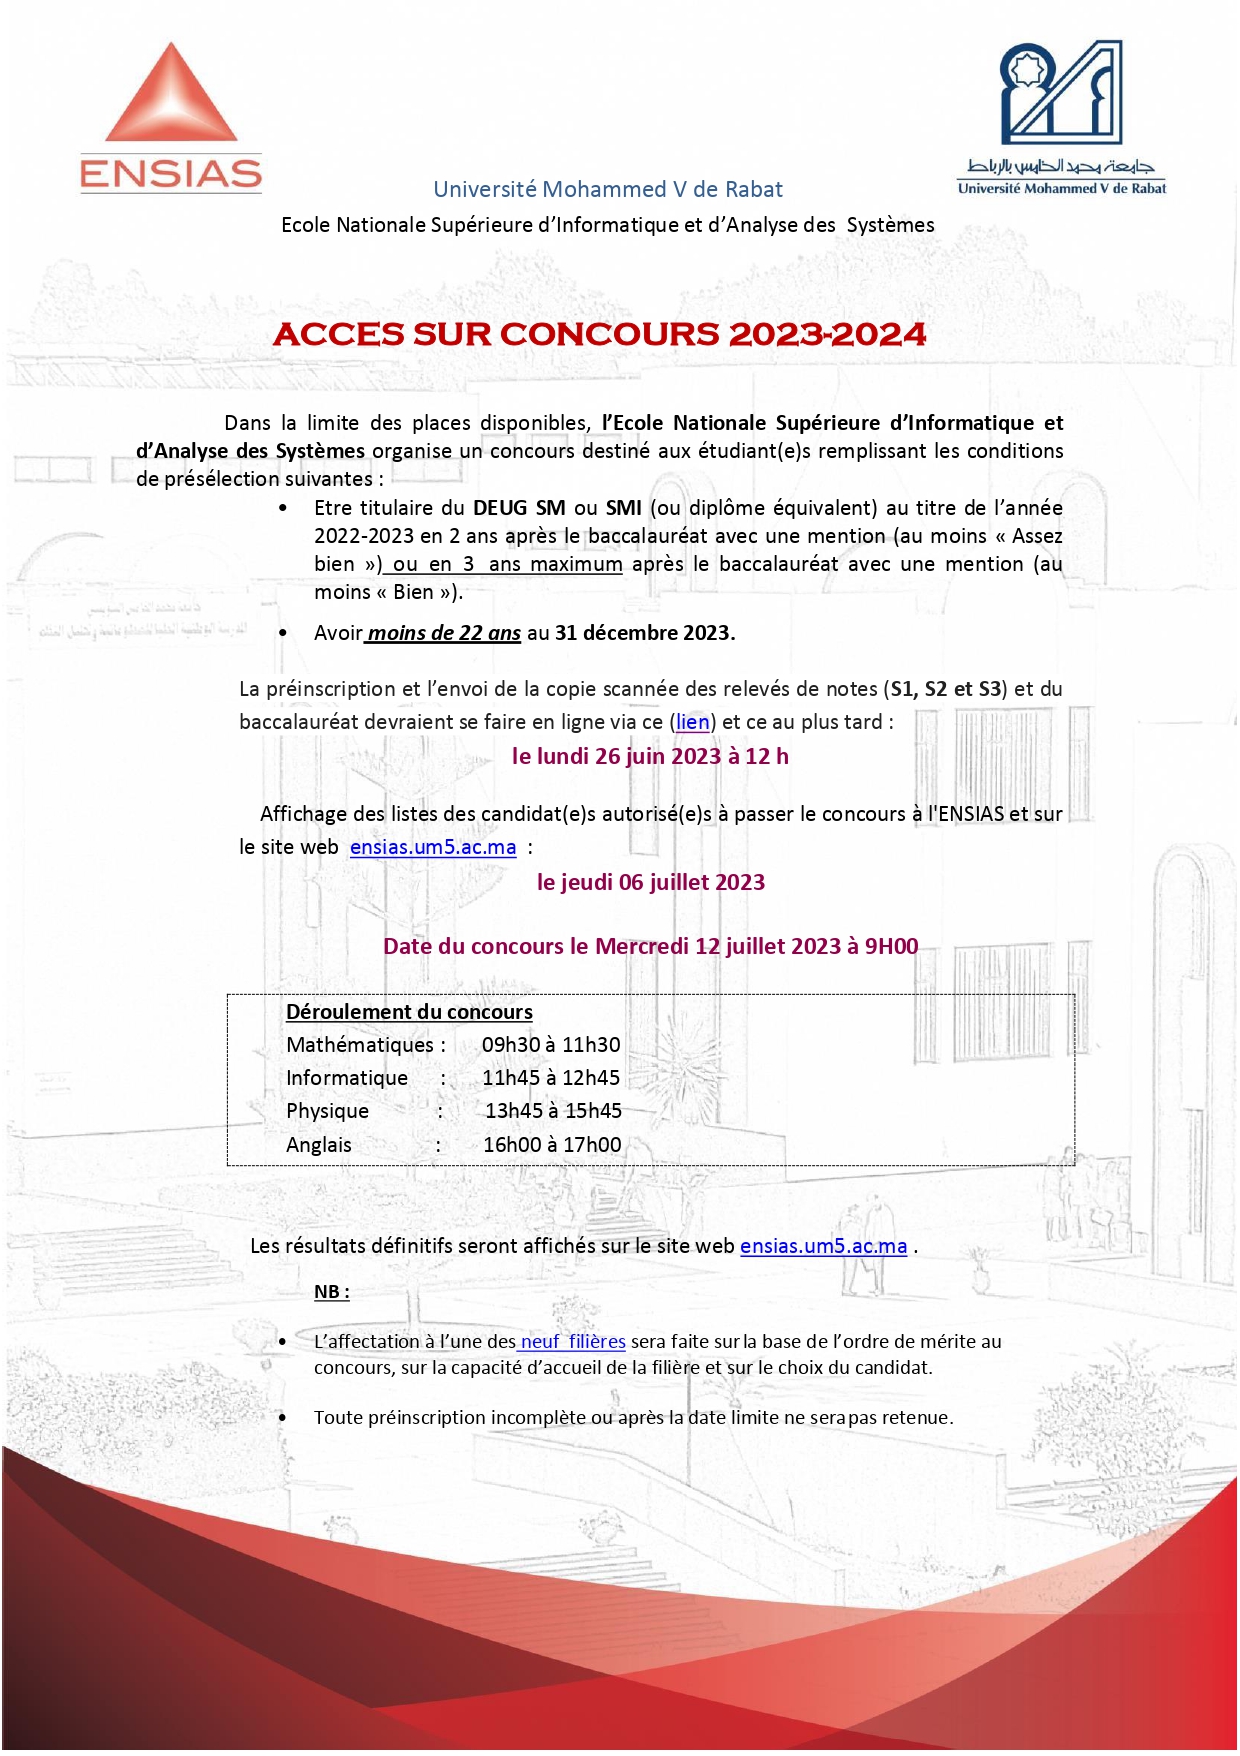 Concours ENSIAS Rabat DEUG 2023 2024